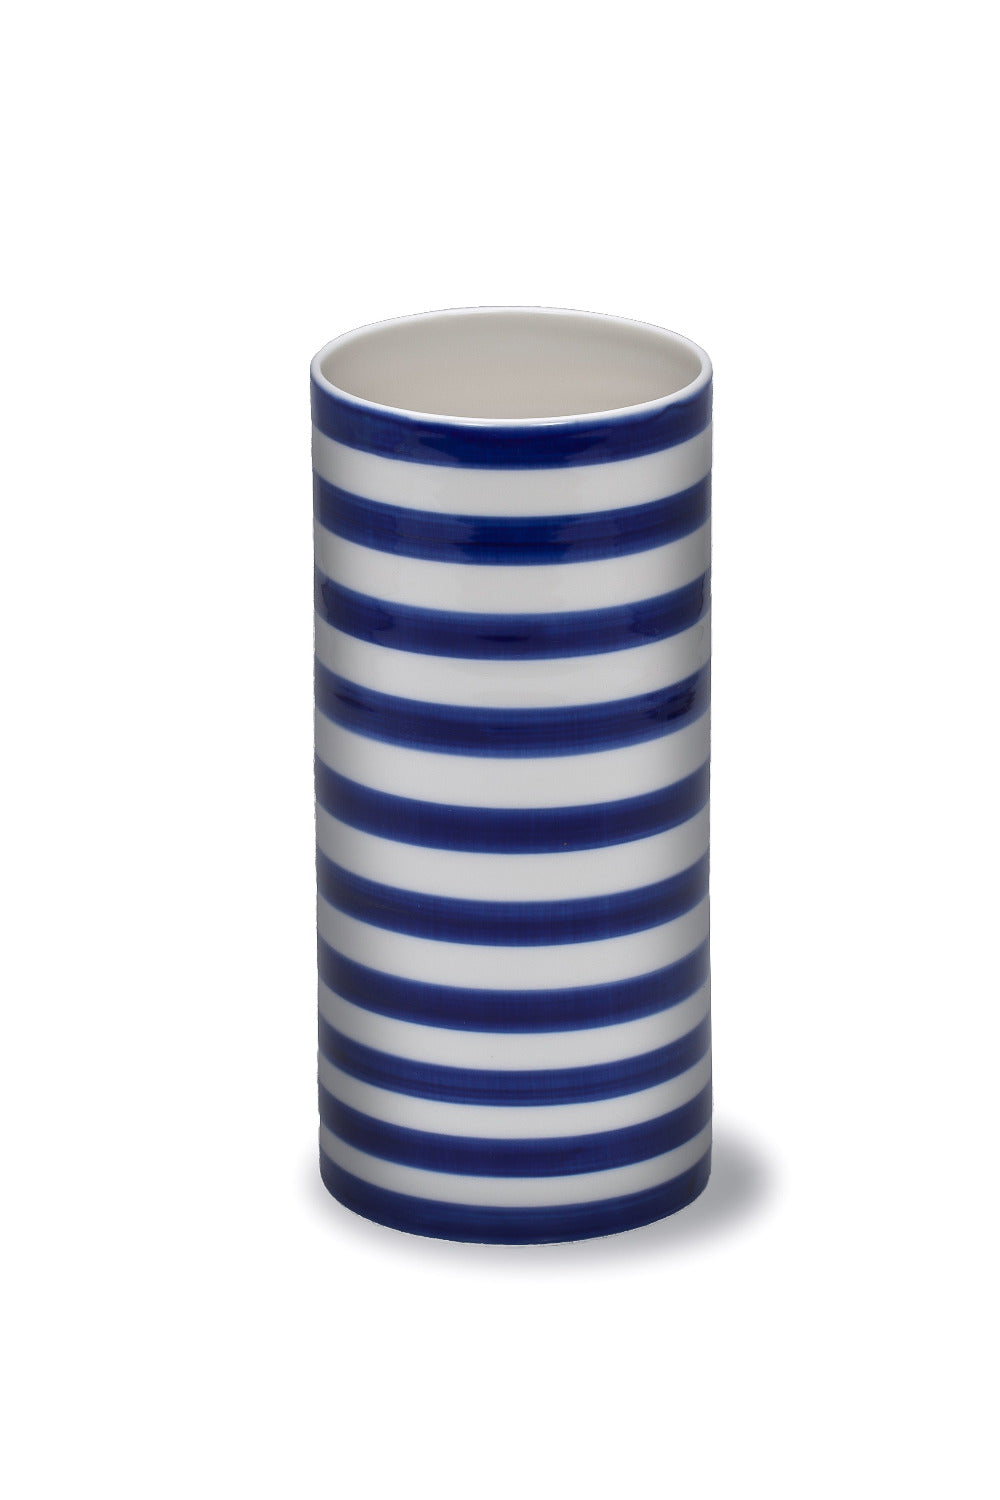 Wide Stripes vases